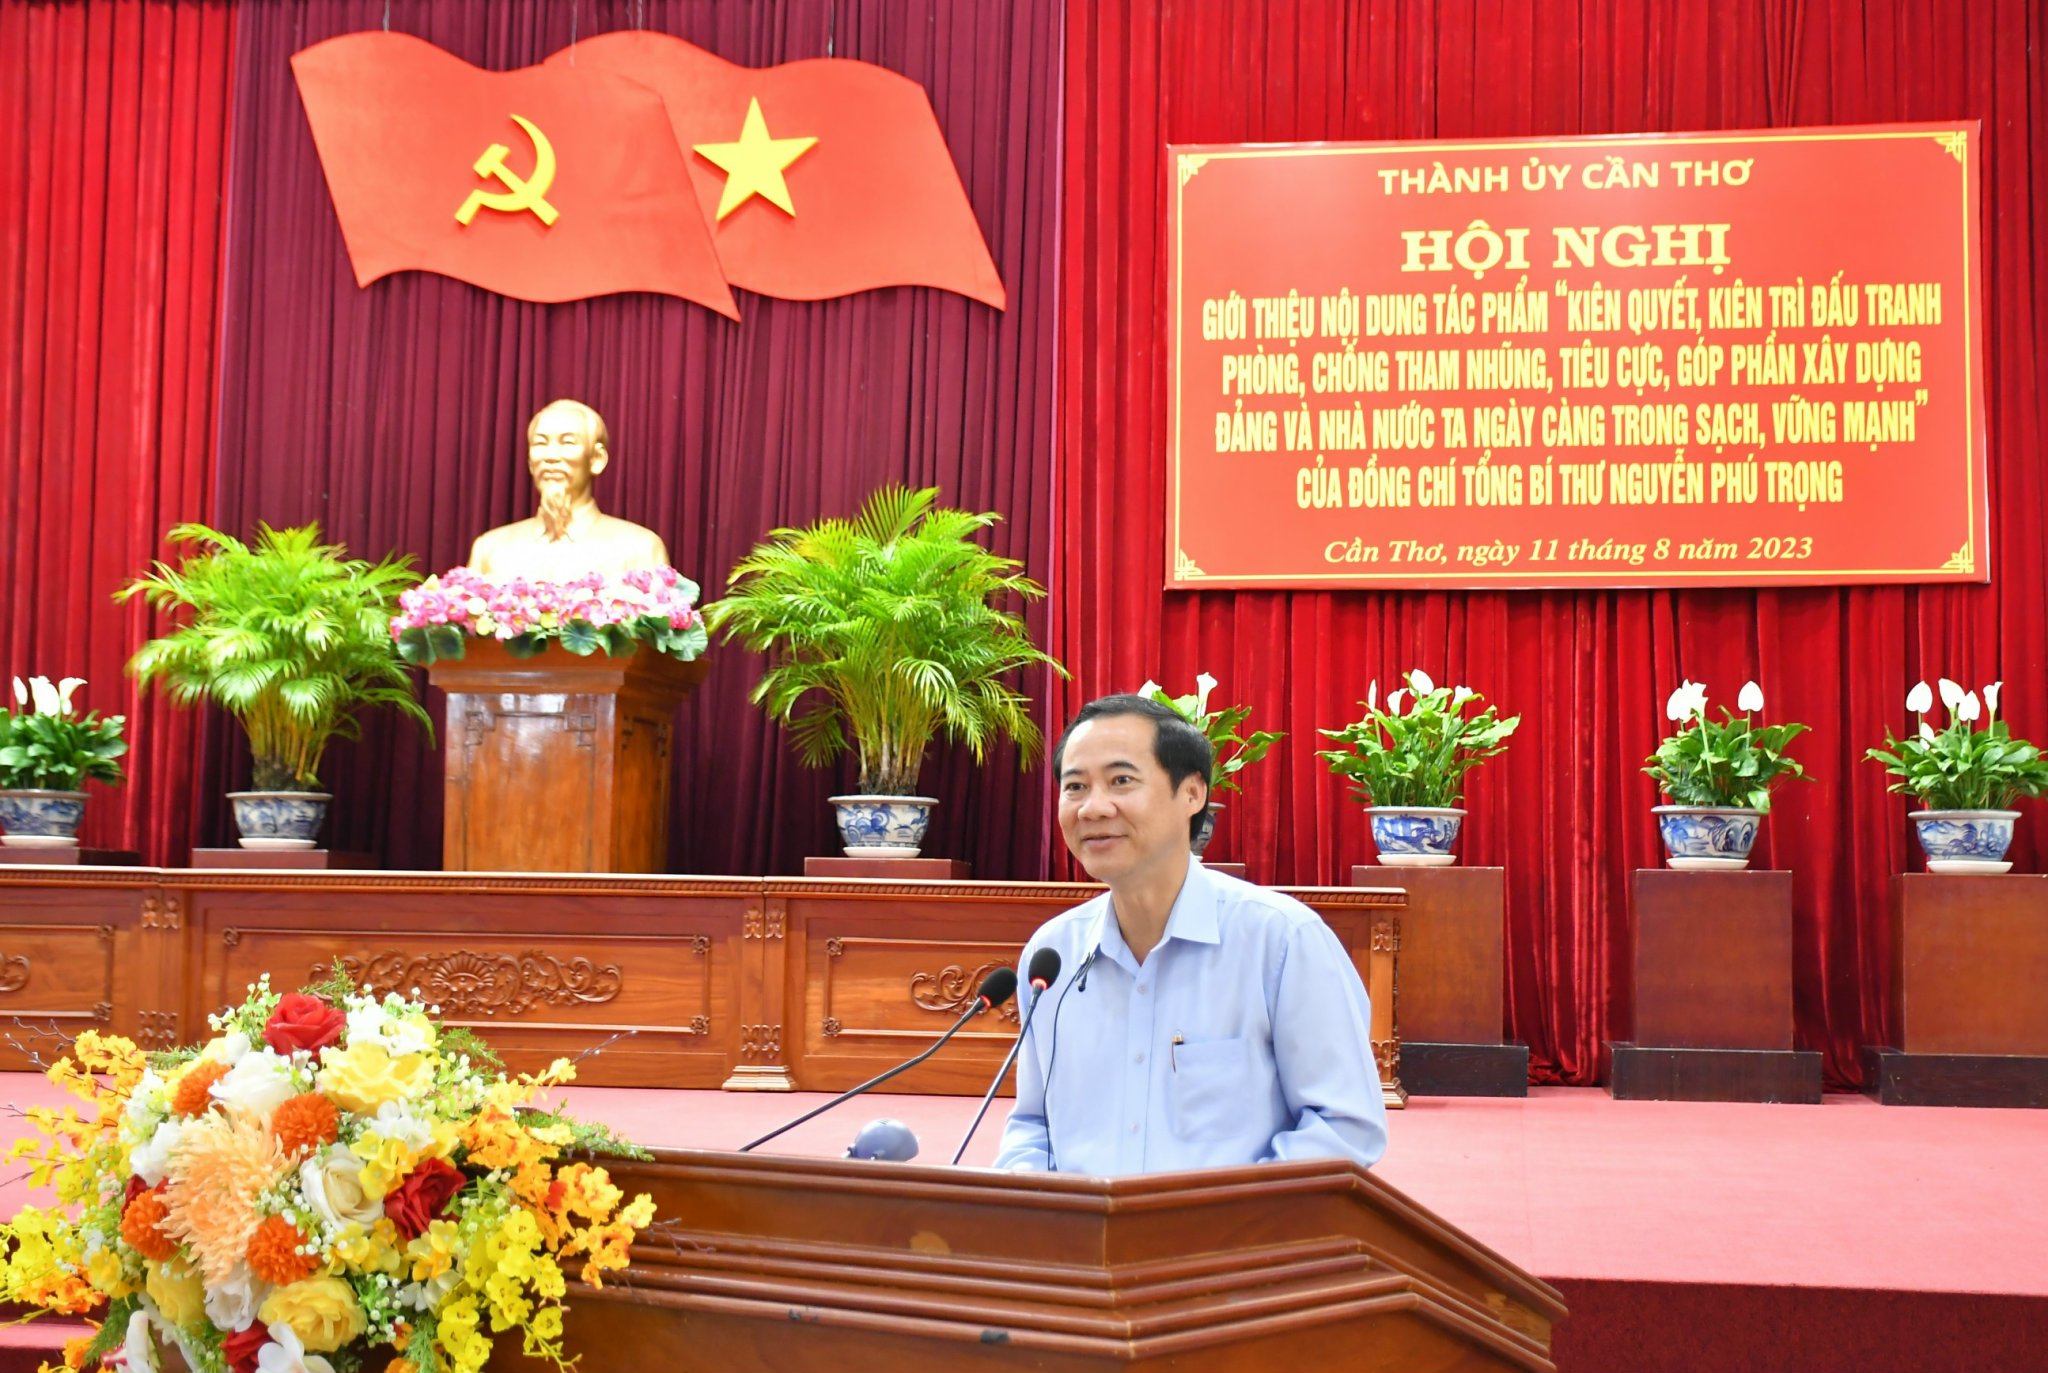 Đồng chí Nguyễn Thái Học, Phó Trưởng Ban Nội chính Trung ương đã giới thiệu những nội dung cốt lõi của Cuốn sách